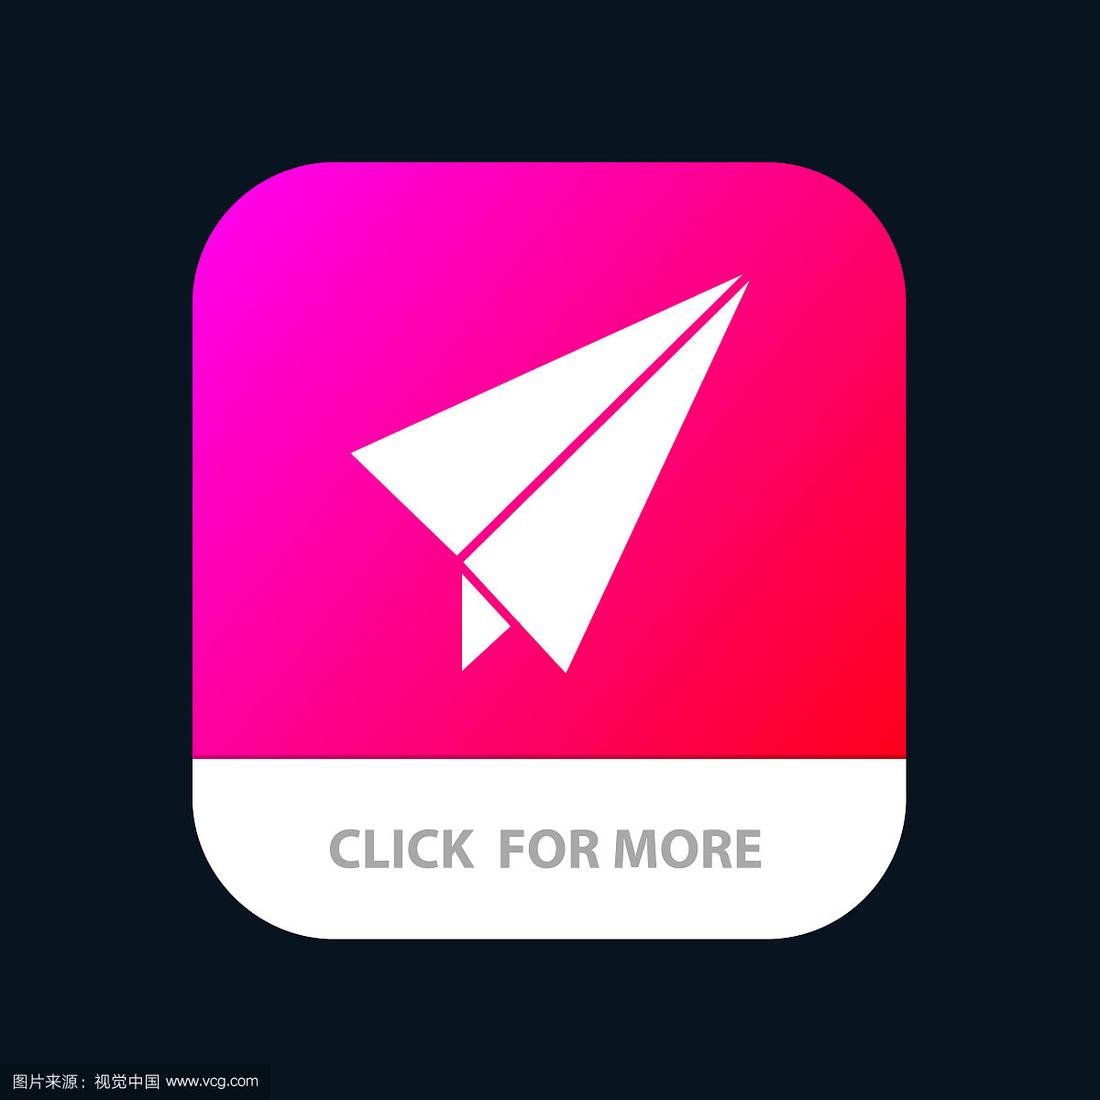 [纸飞机安卓下载地址]纸飞机app下载地址